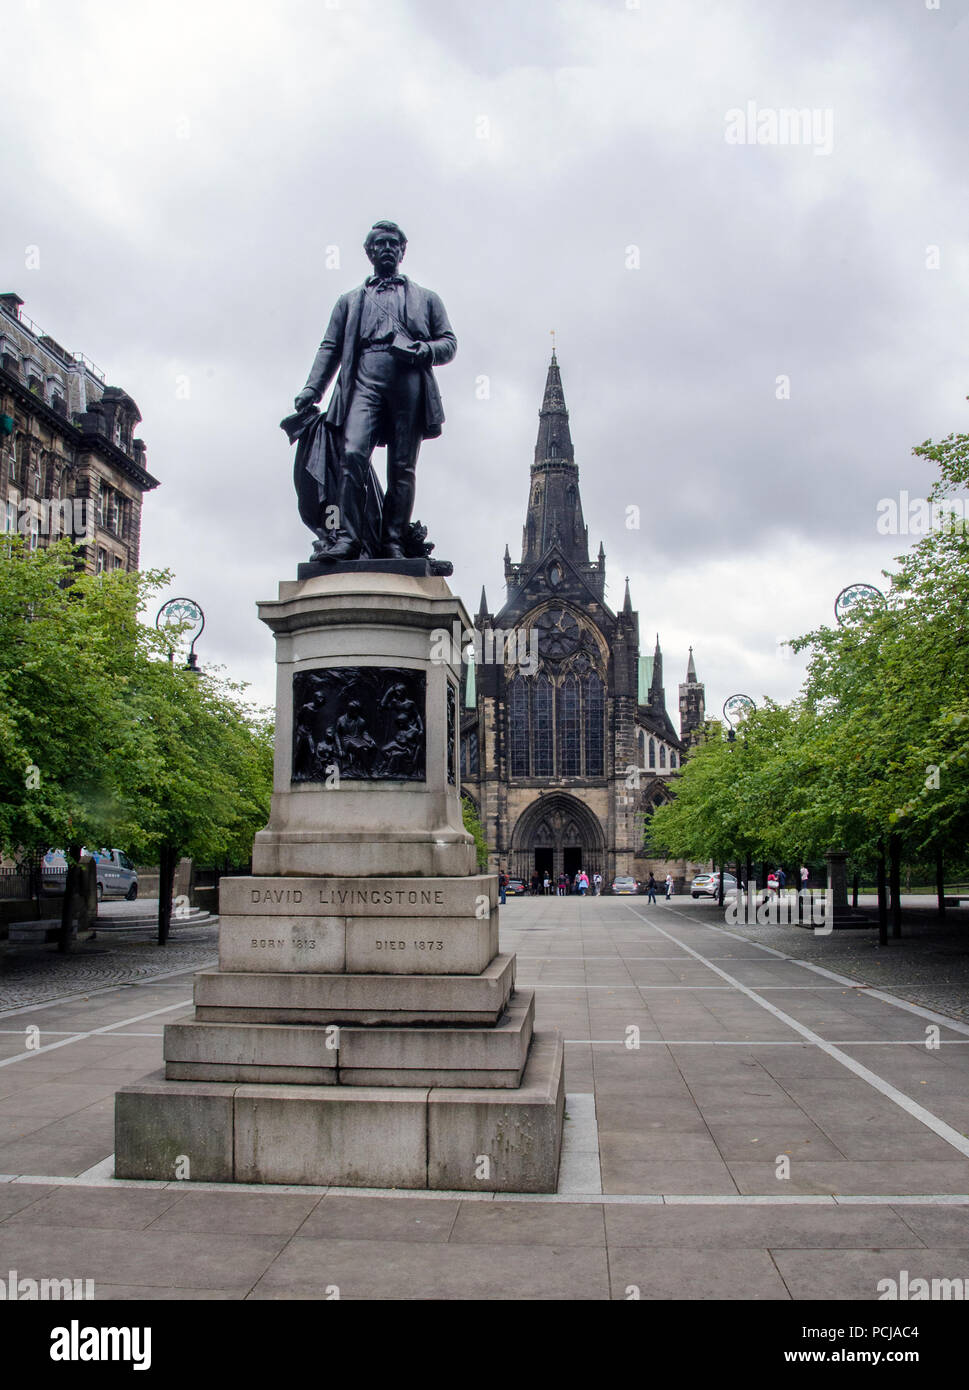 GLASGOW, ÉCOSSE - 2 août 2018 : une statue de l'explorateur écossais David Livingstone (1813 - 1873). Derrière lui, c'est la cathédrale de Glasgow. Banque D'Images